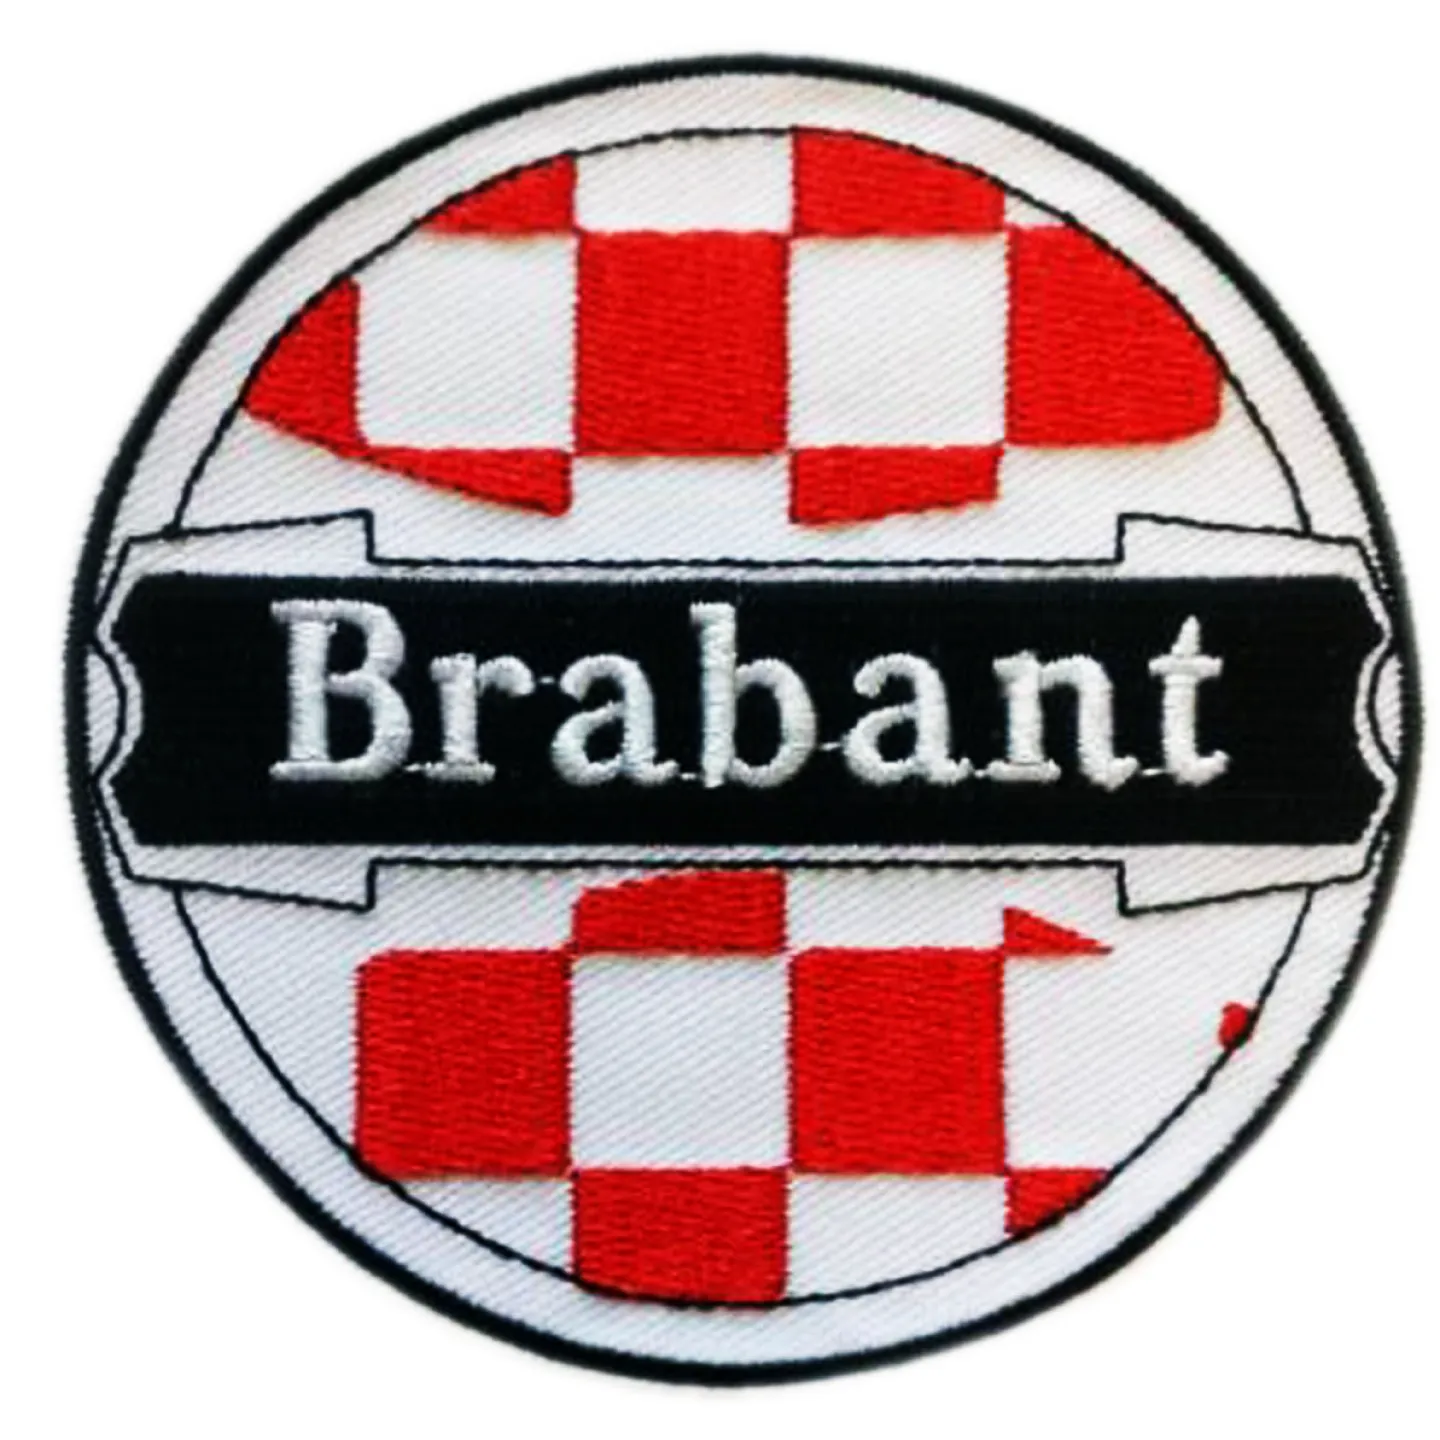 Kruikenstad embleem Brabant.